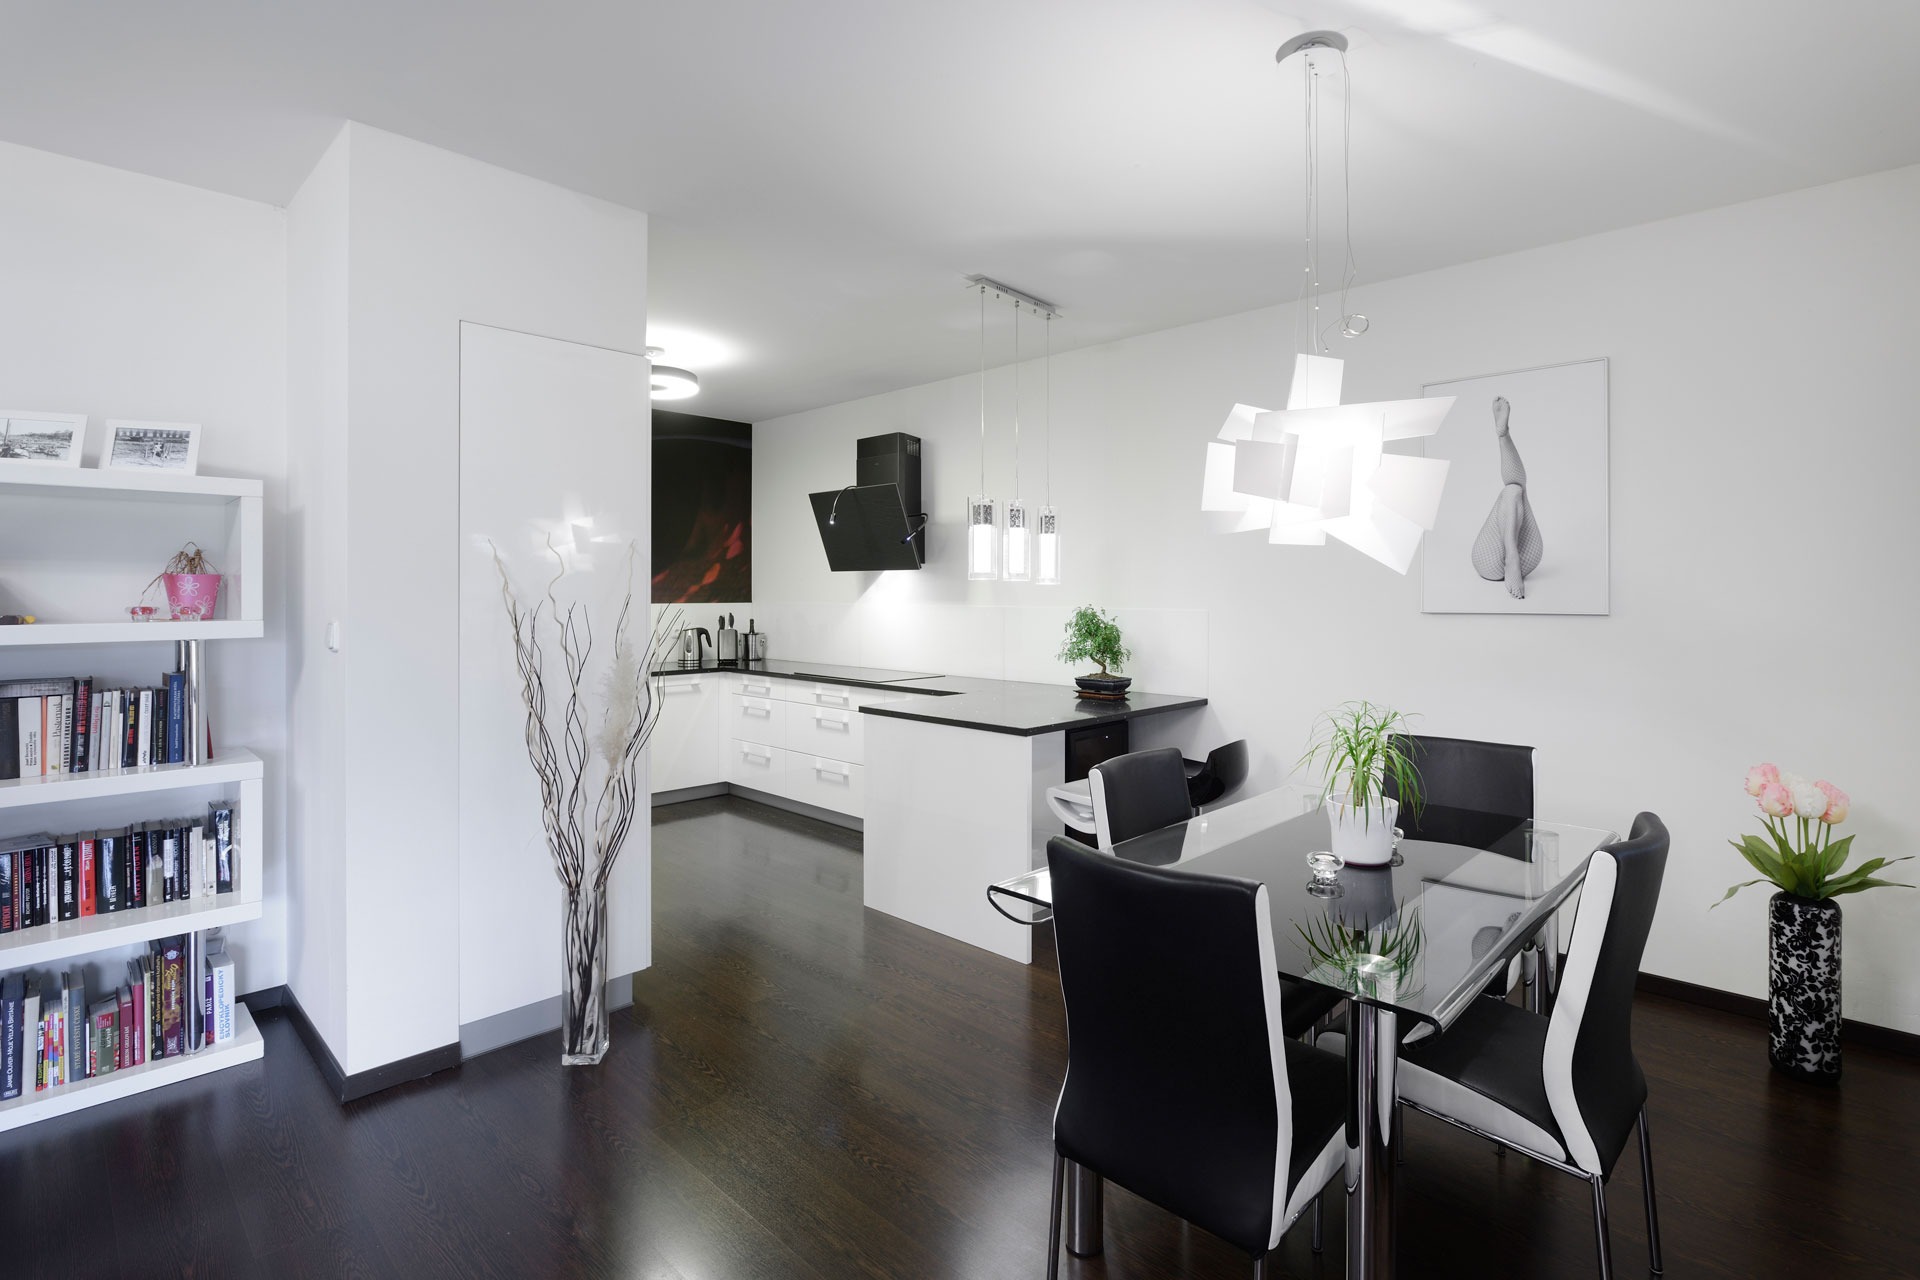 Hanák nábytek Ukázka realizace kuchyně Bílý lak Single byt